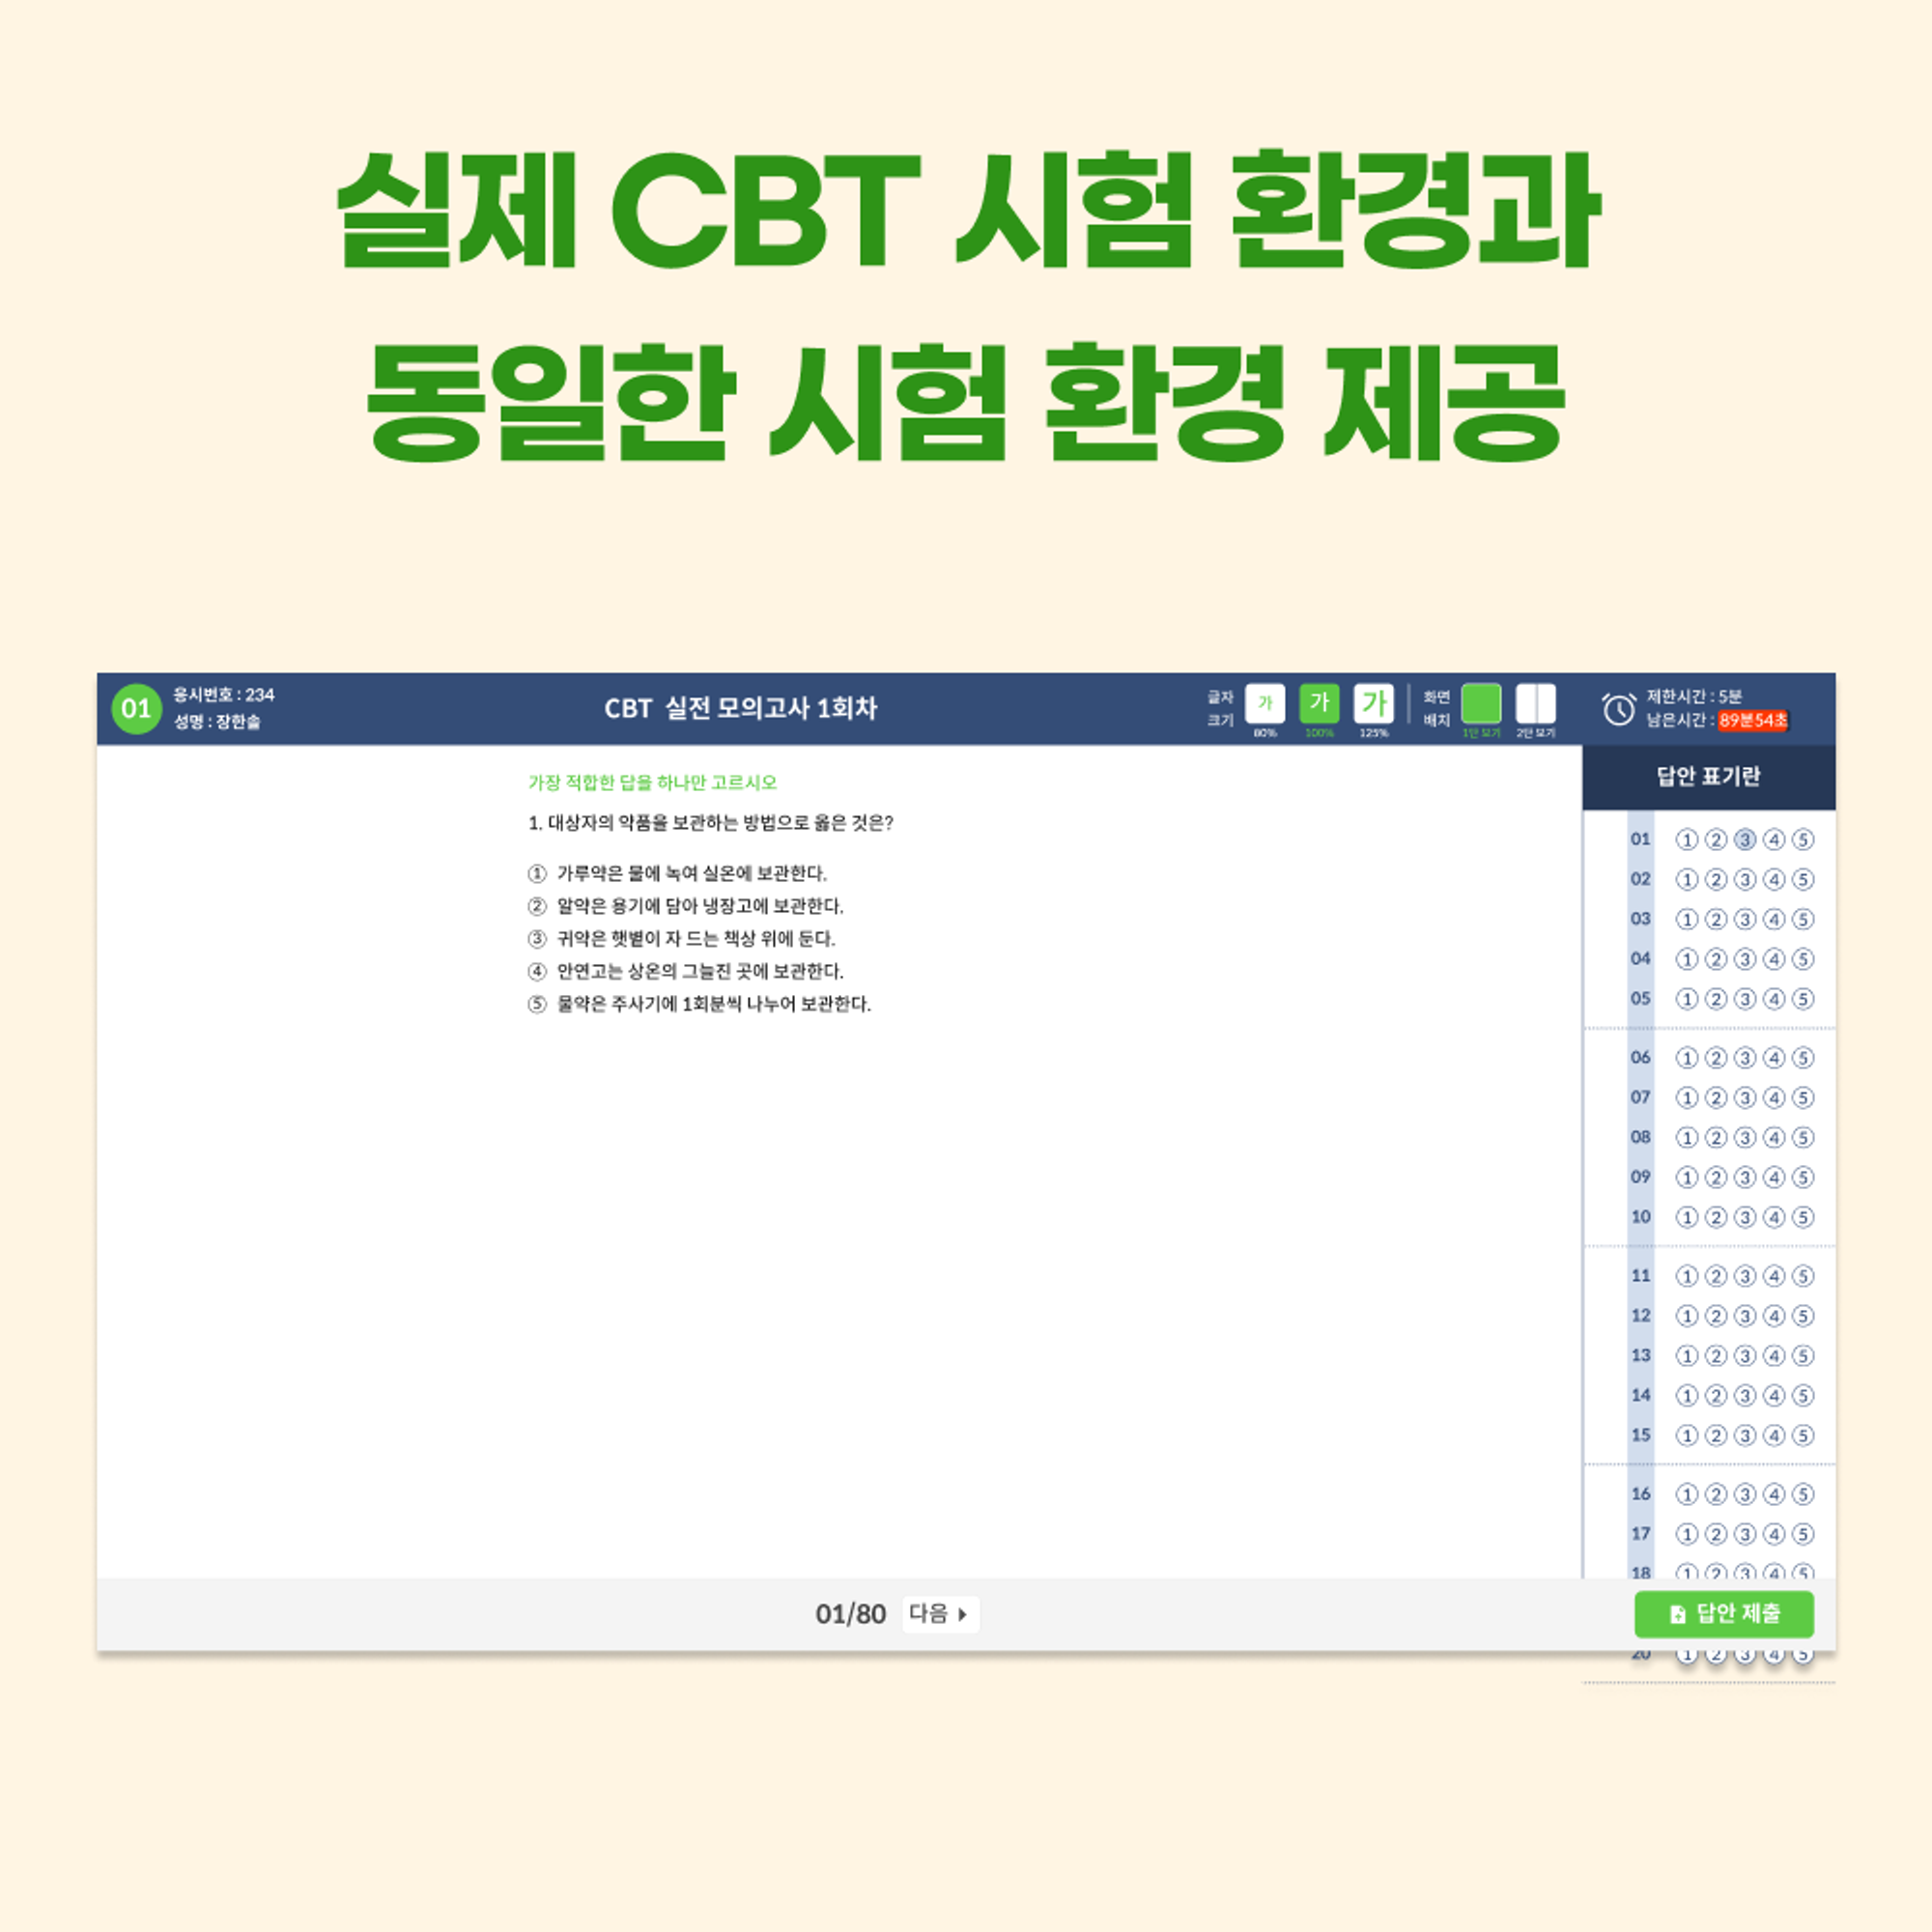 <케어파트너 CBT 소개 2>